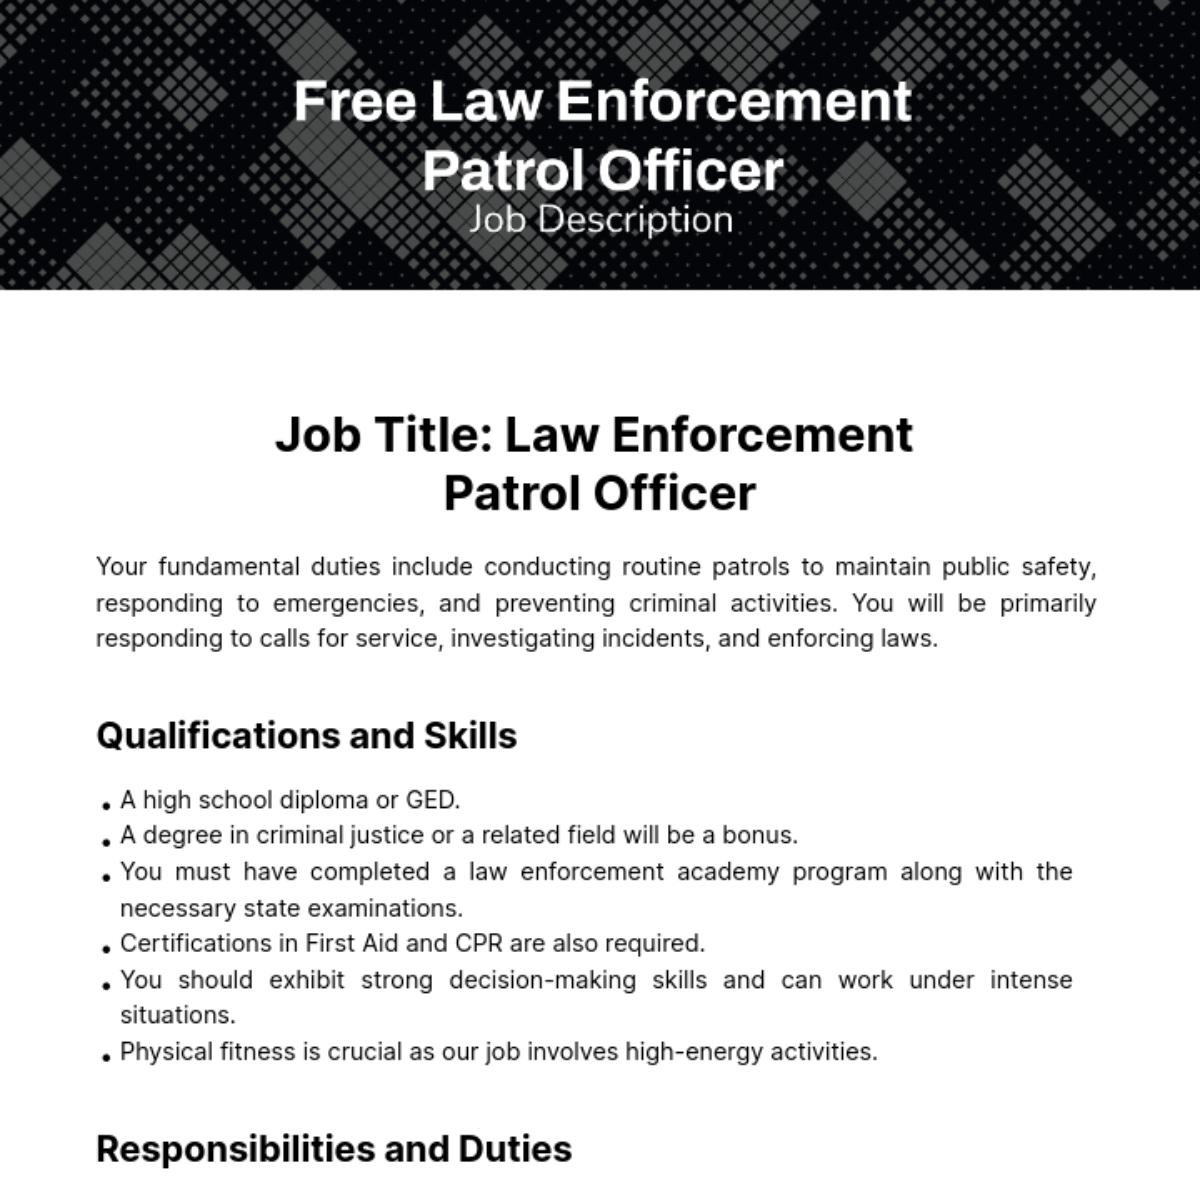 Free Law Enforcement Patrol Officer Job Description Template